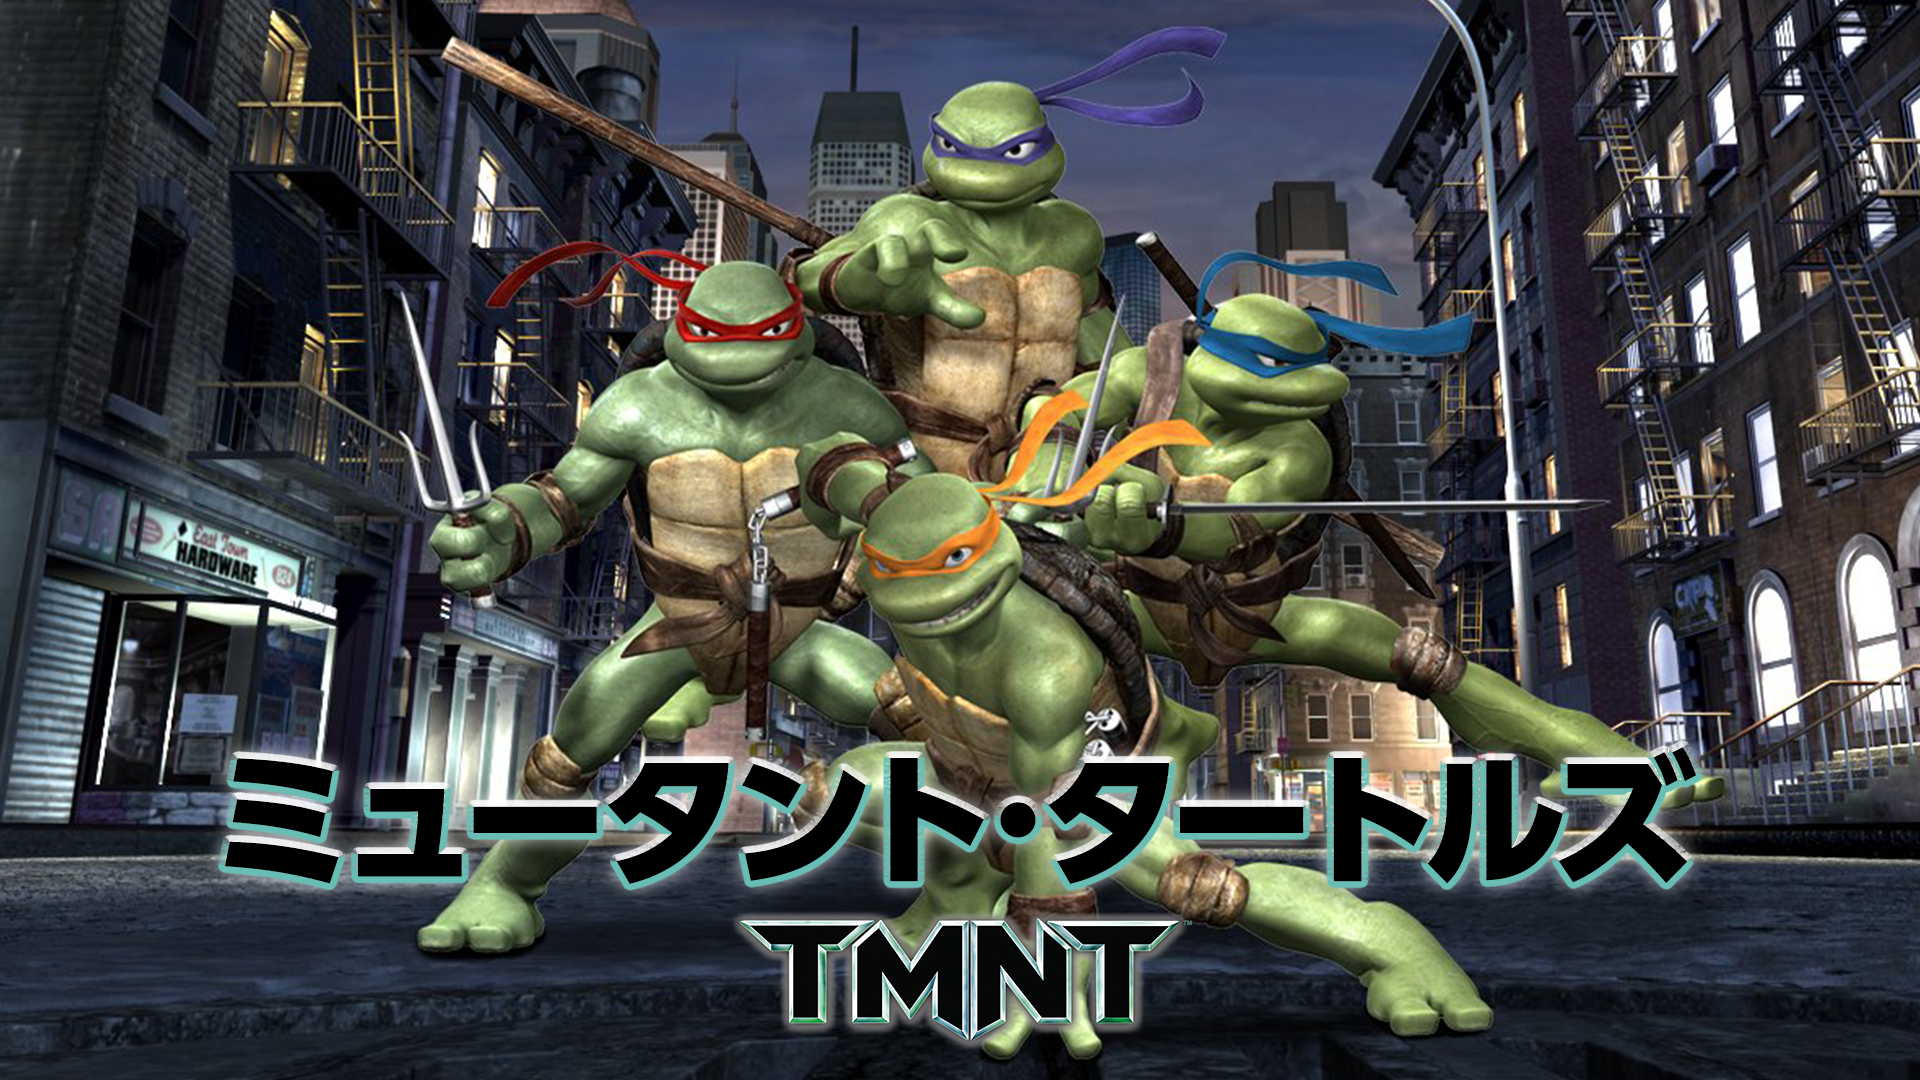 ミュータント・タートルズ －TMNT－(洋画 / 2007) - 動画配信 | U-NEXT 